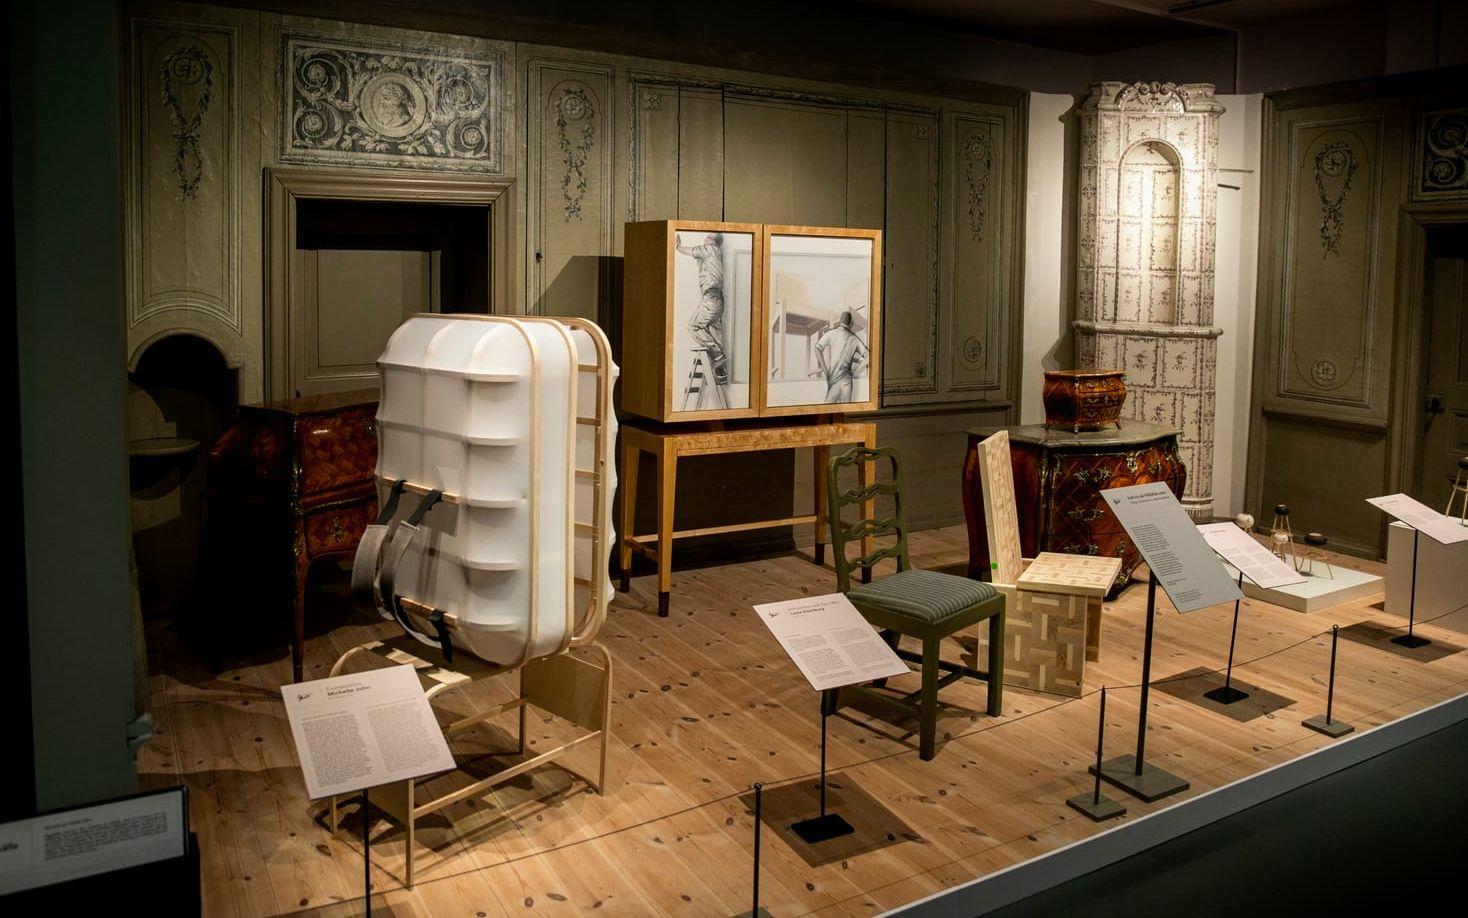 På våning två finns också plats för museets nya basutställning om 1700-talet. Här blandas gamla föremål från samlingarna med nya möbler som elever från Stenebys möbeldesignlinje gjort.